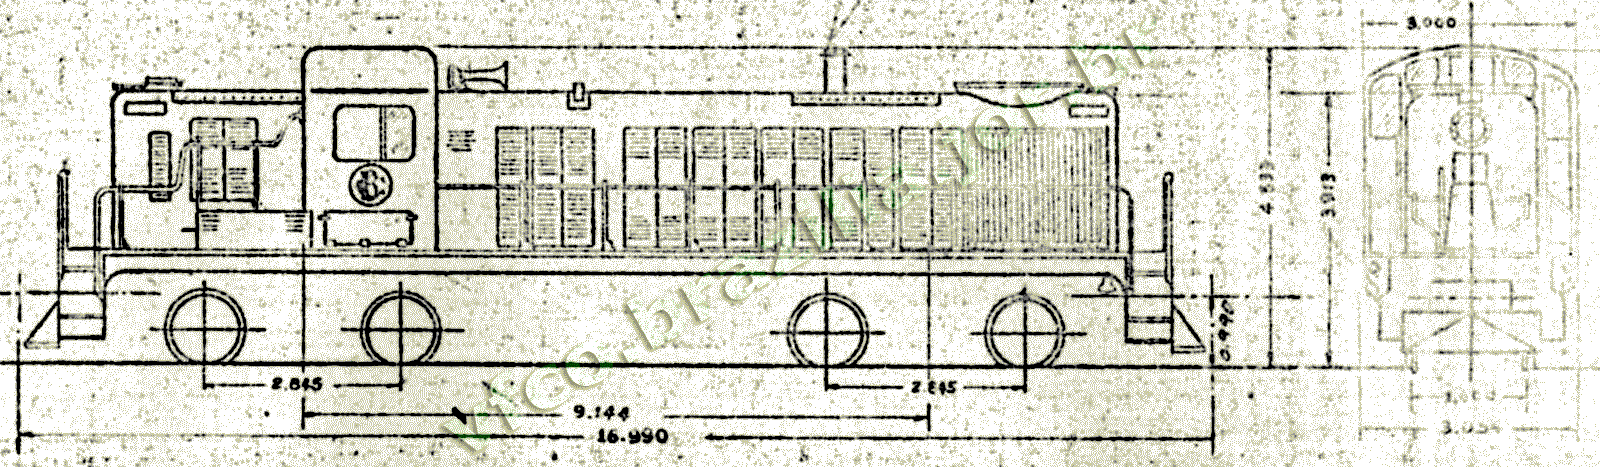 Desenho e medidas da Locomotiva Alco RS-3